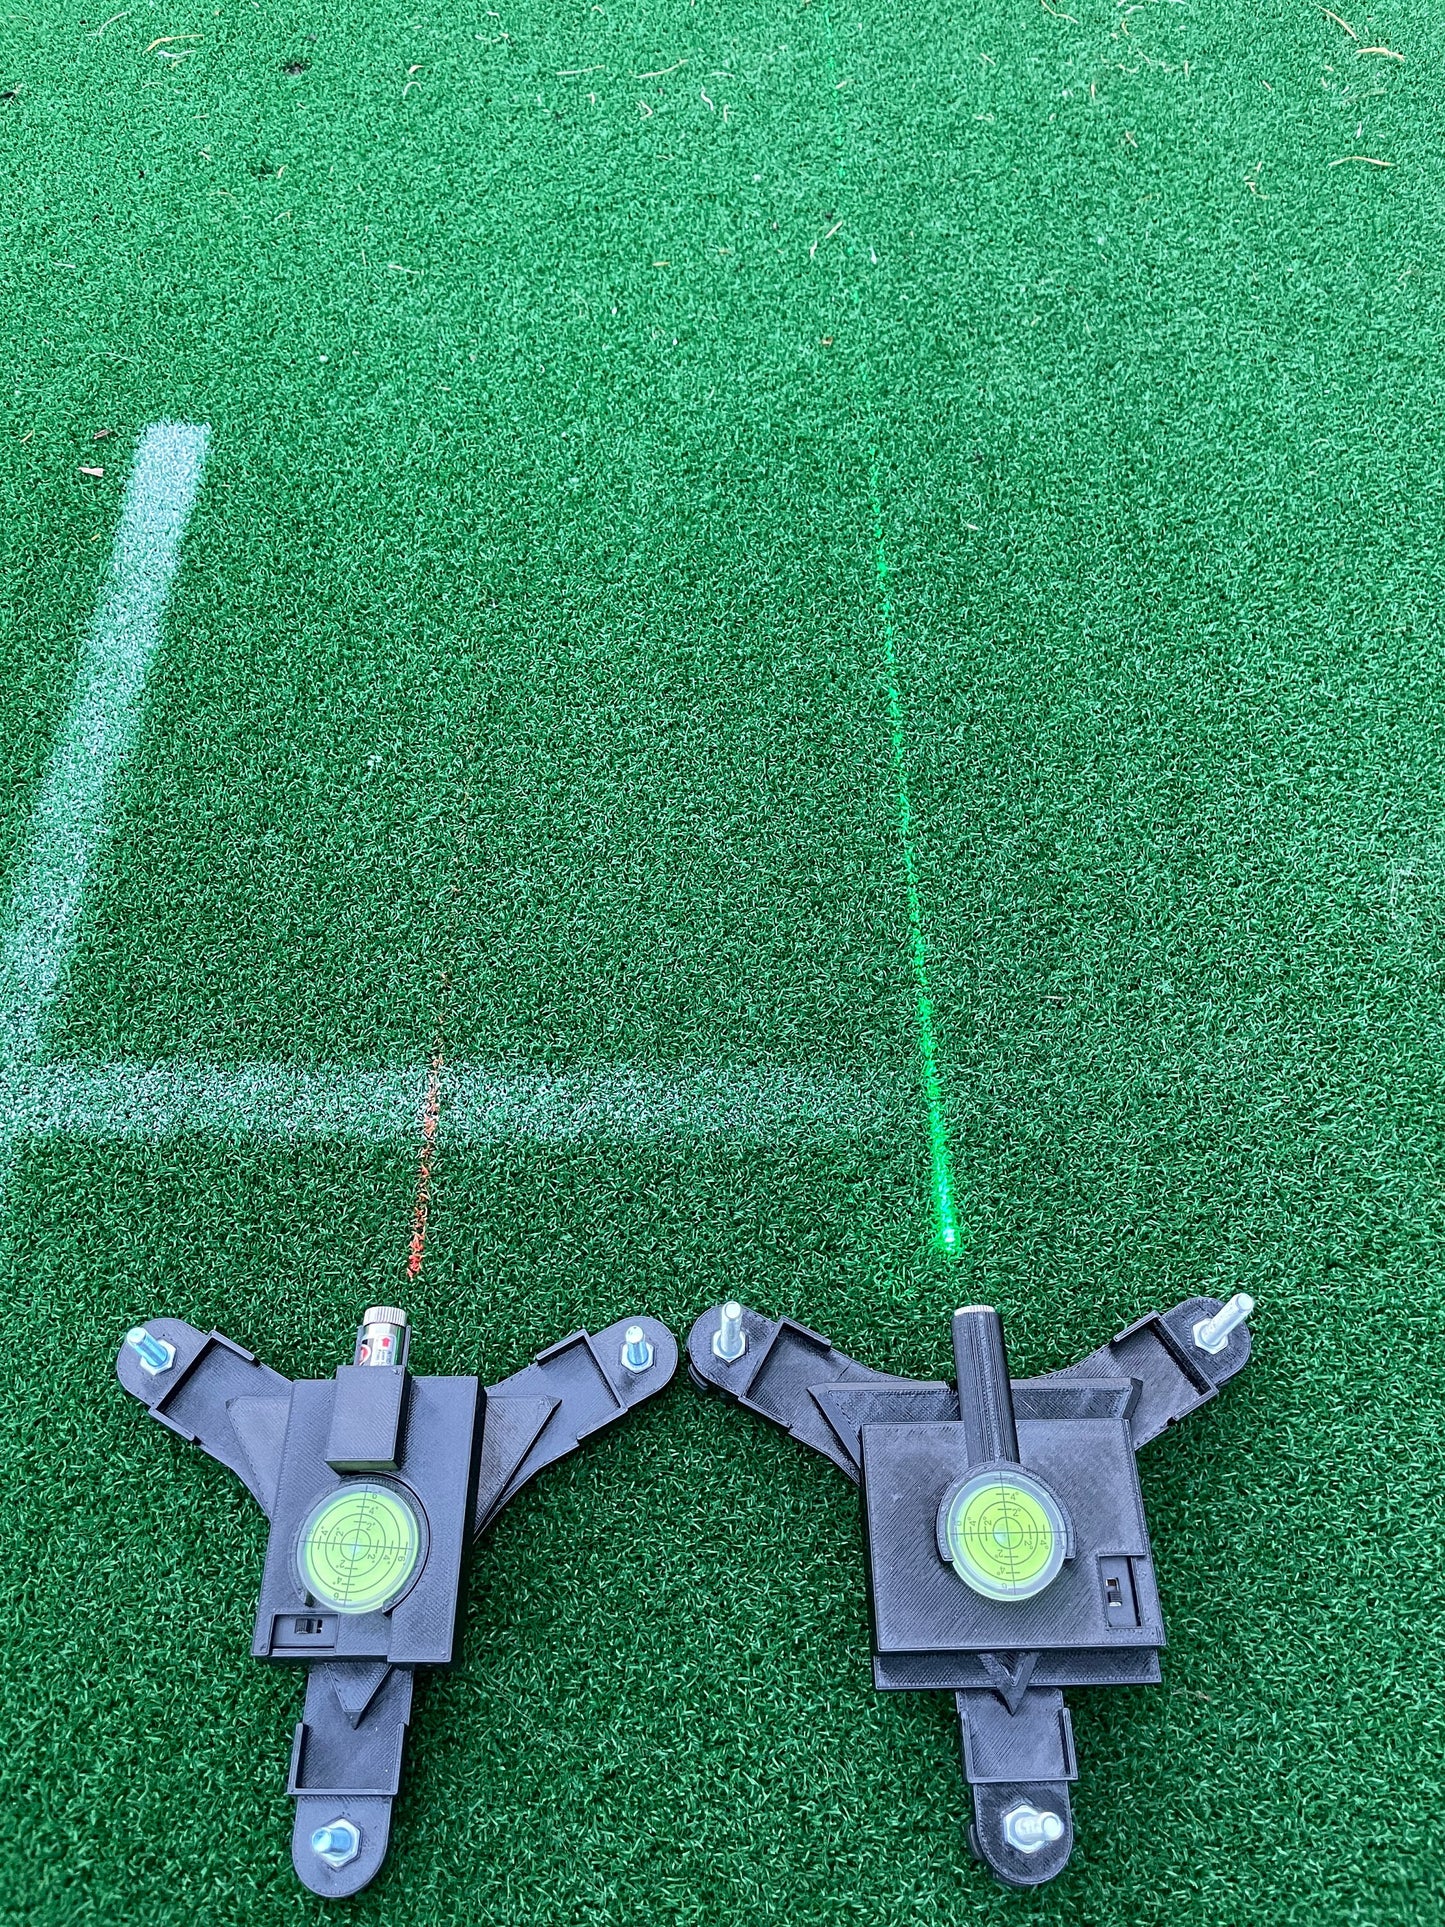 Garmin R10 Laser alignement stand